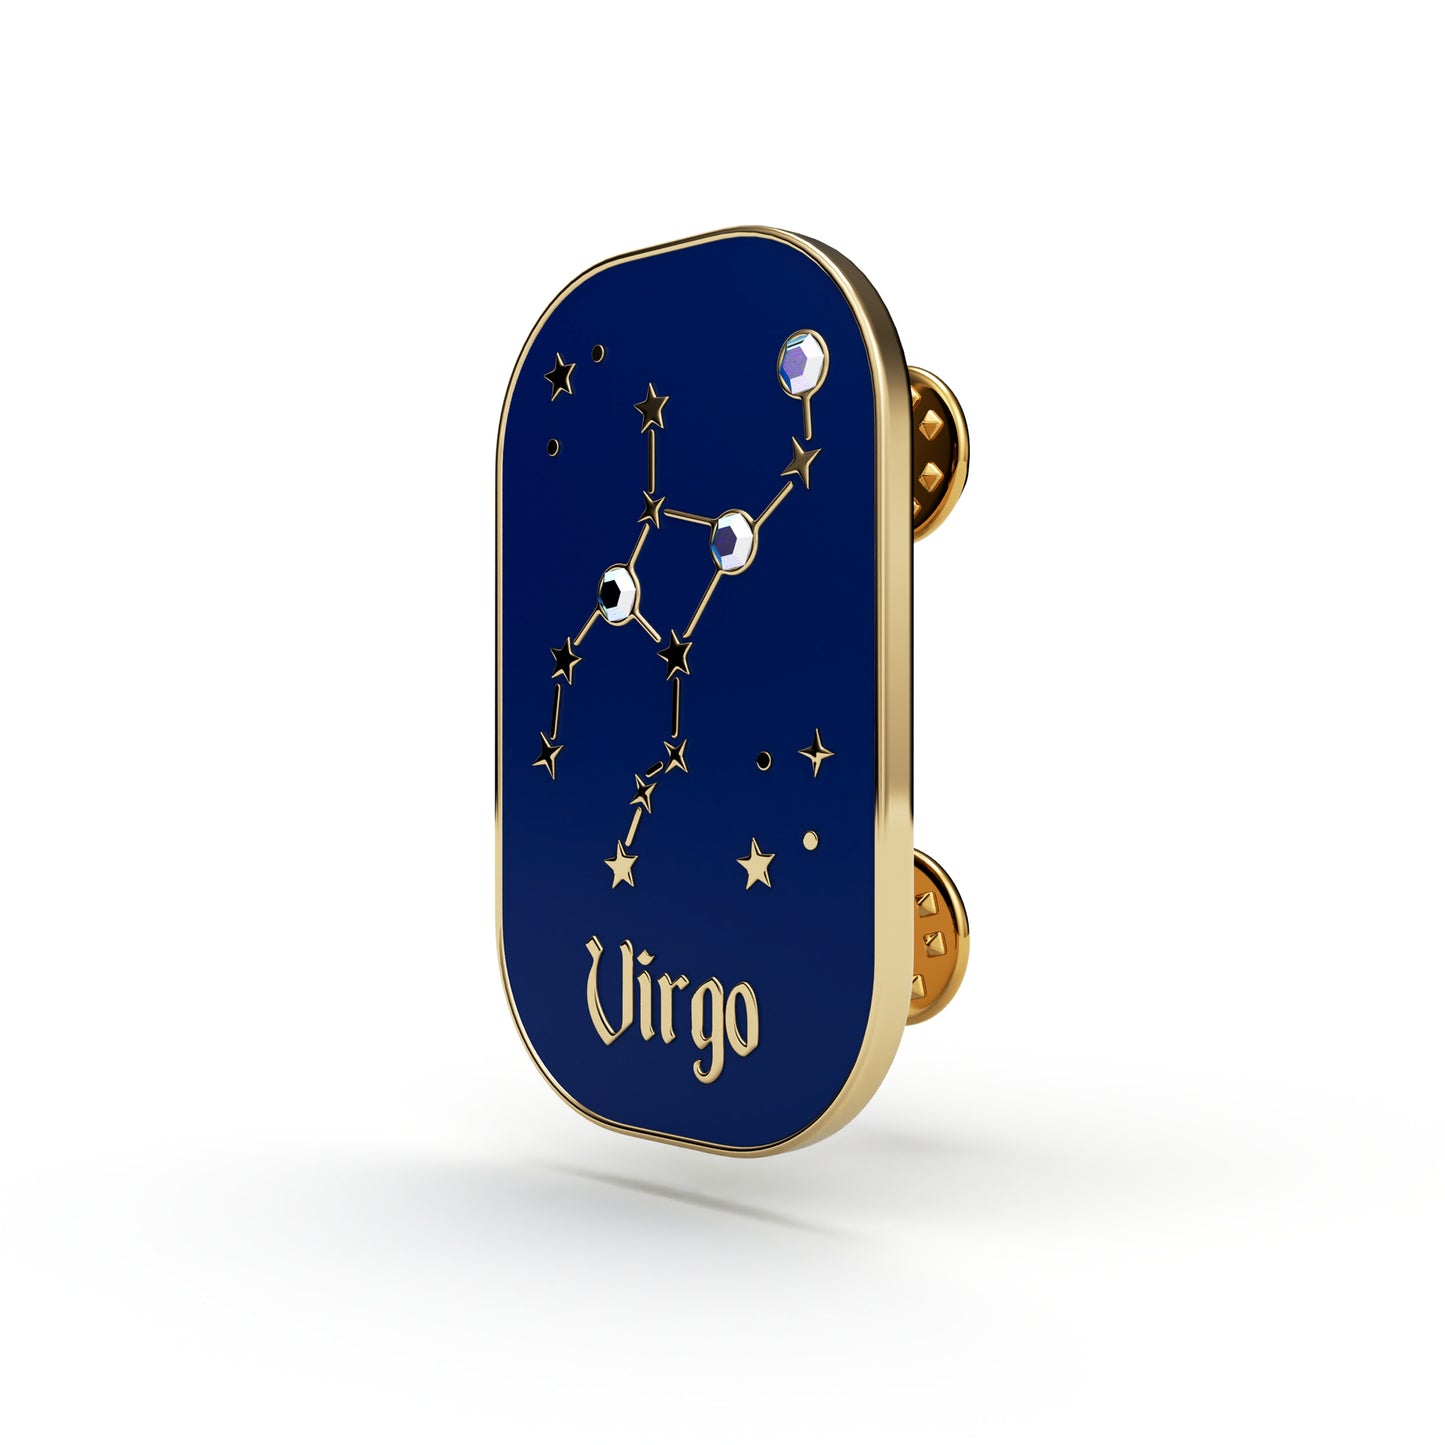 Znak zodiaku Panna (Virgo) - przypinka z cyrkoniami wykończona 14K złotem